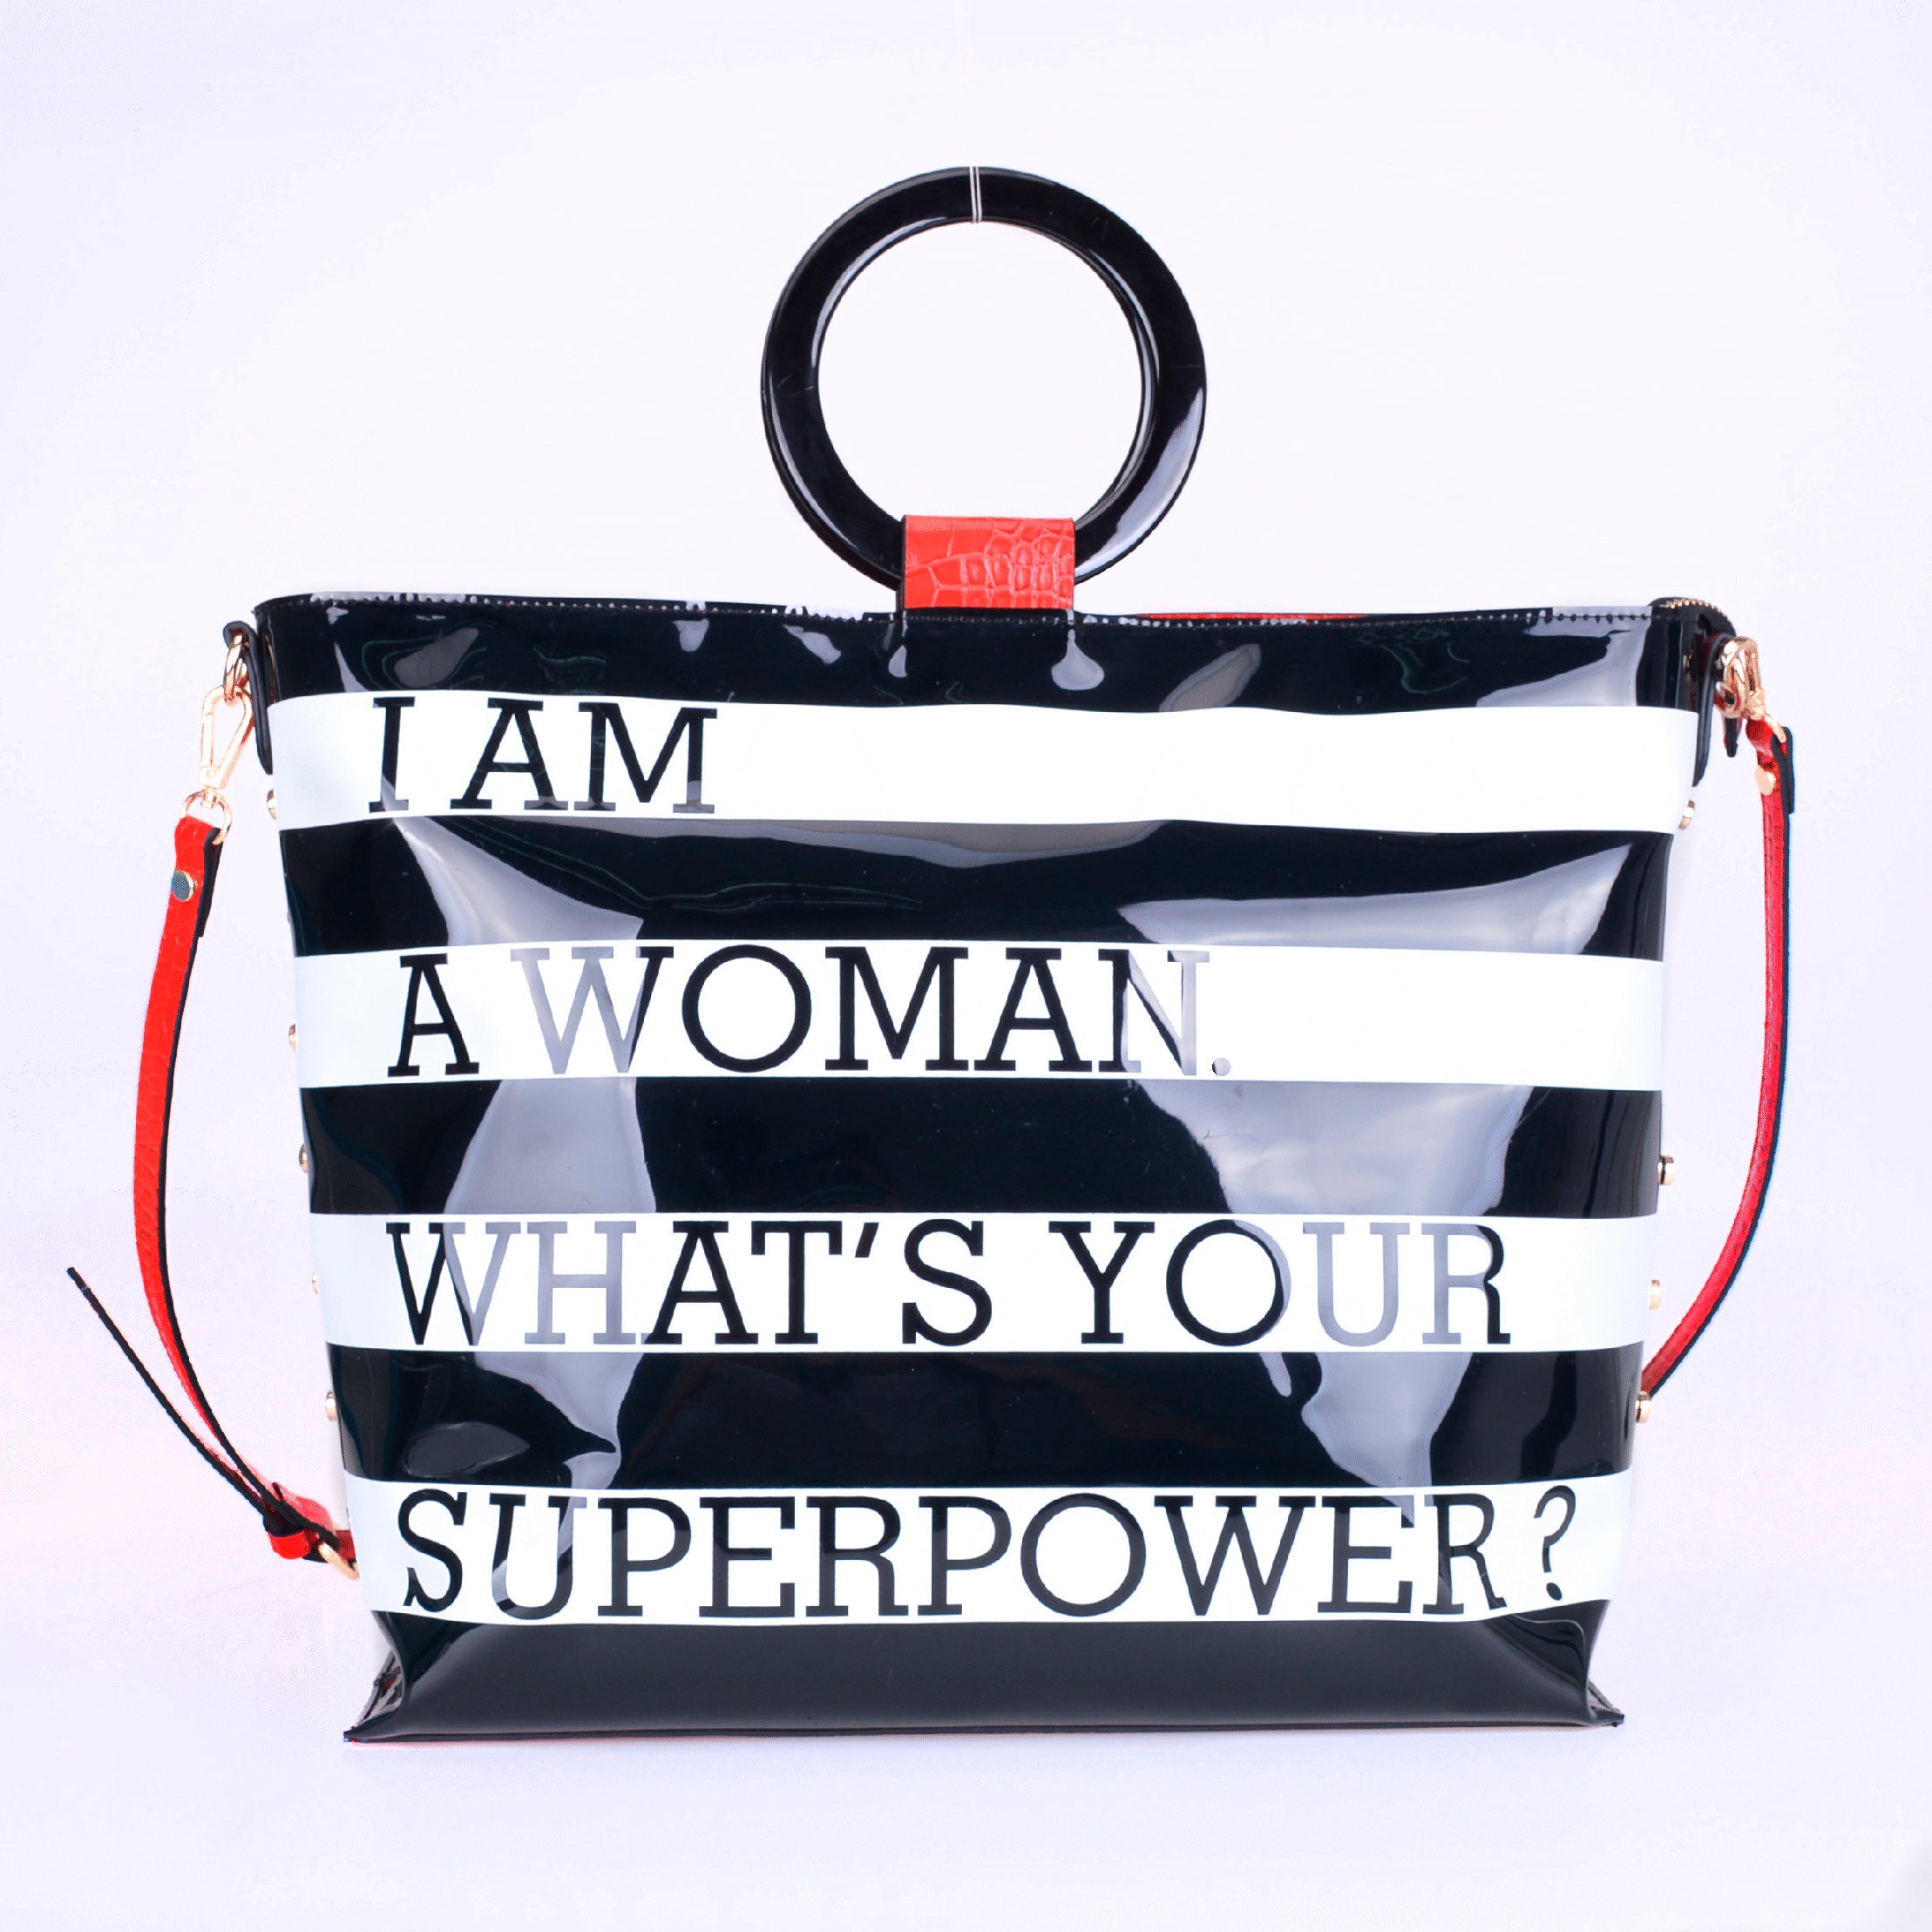 Okella’s "Superwoman" Tote Bag